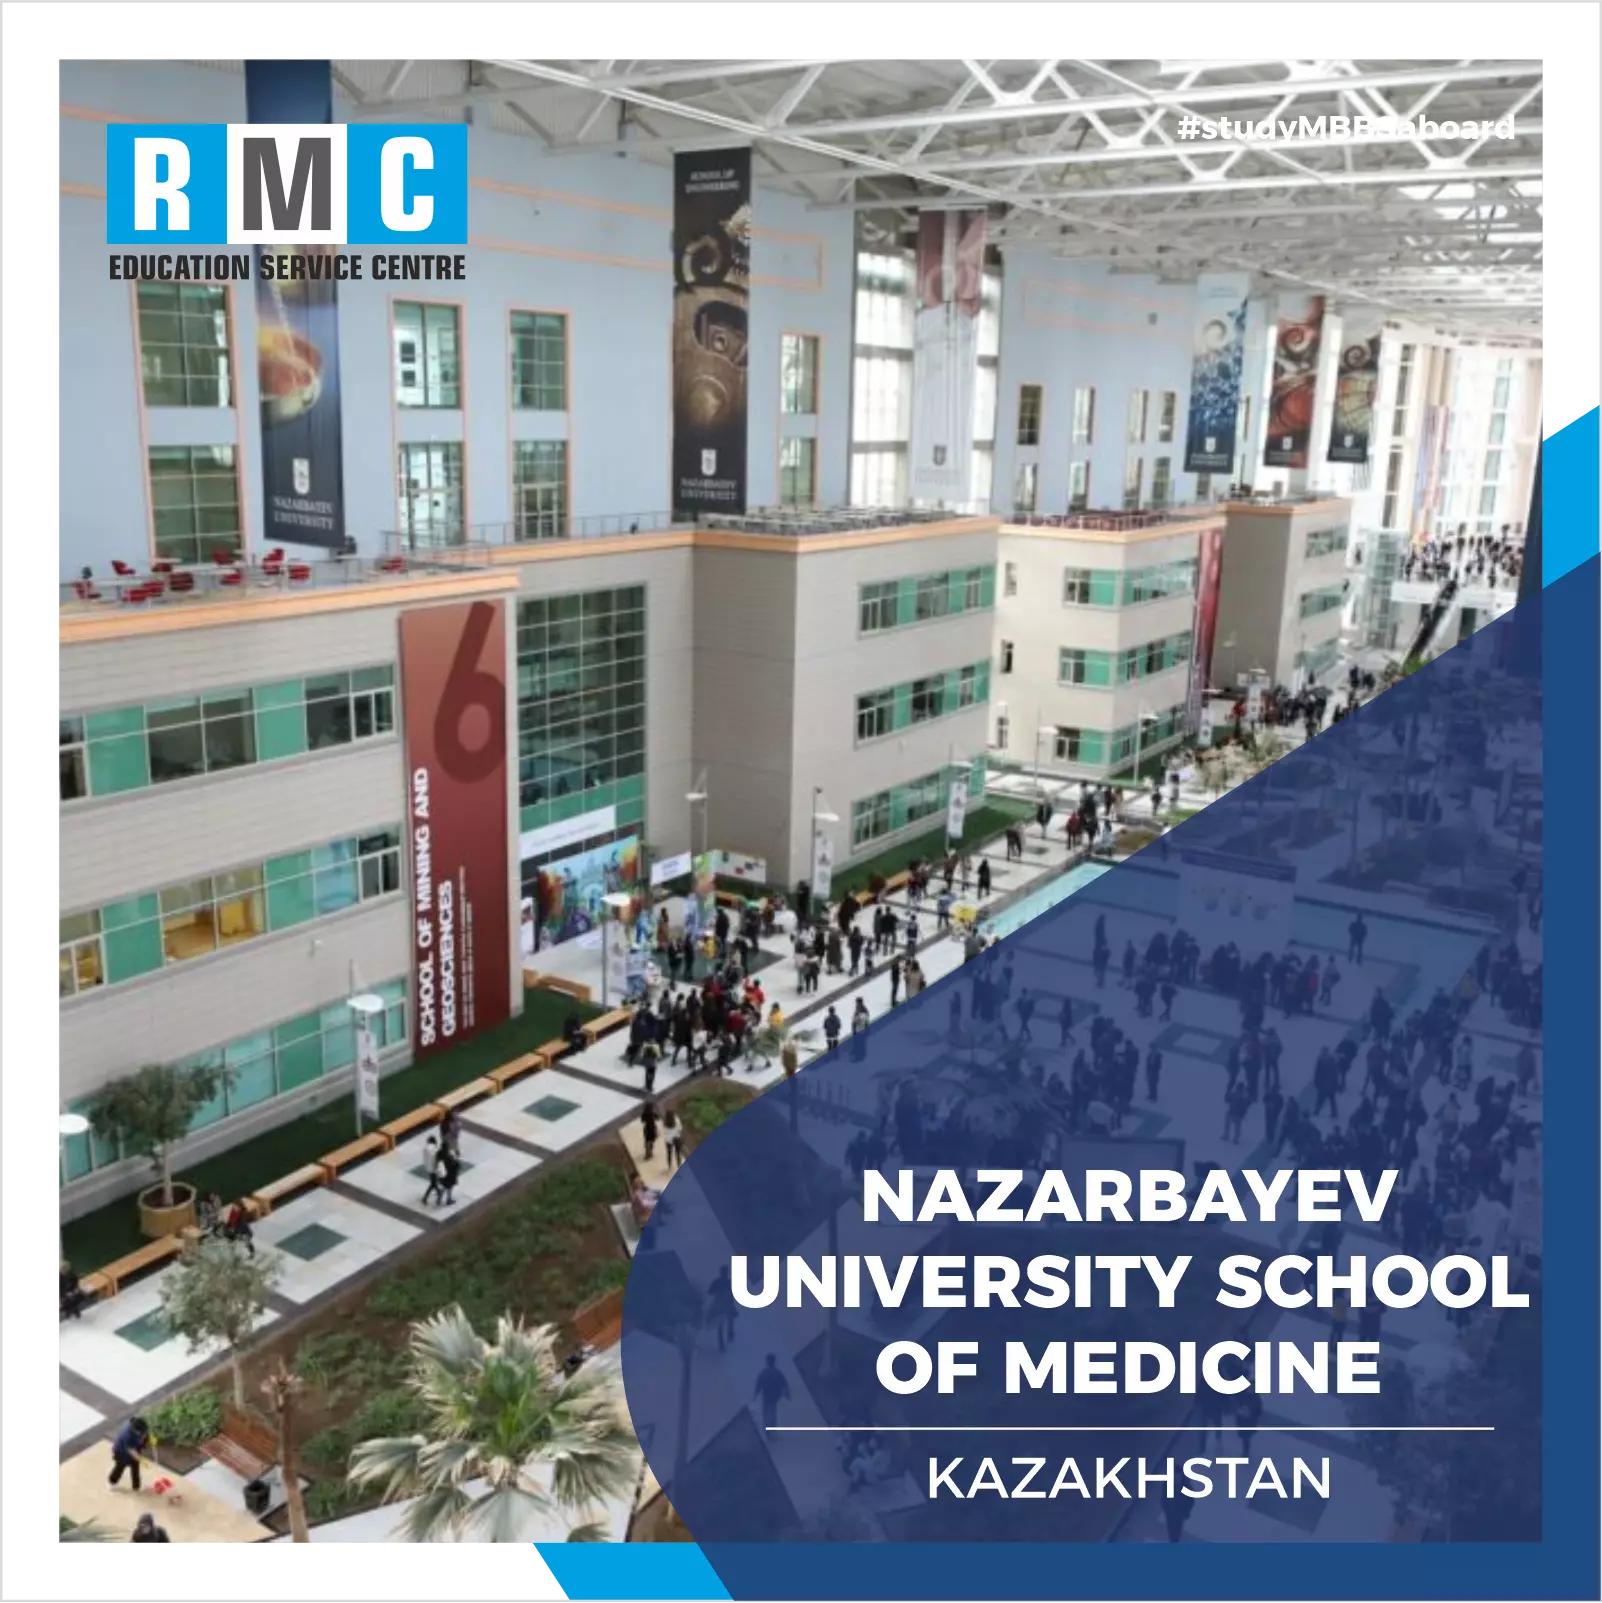 Nazarbayev University School of Medicine